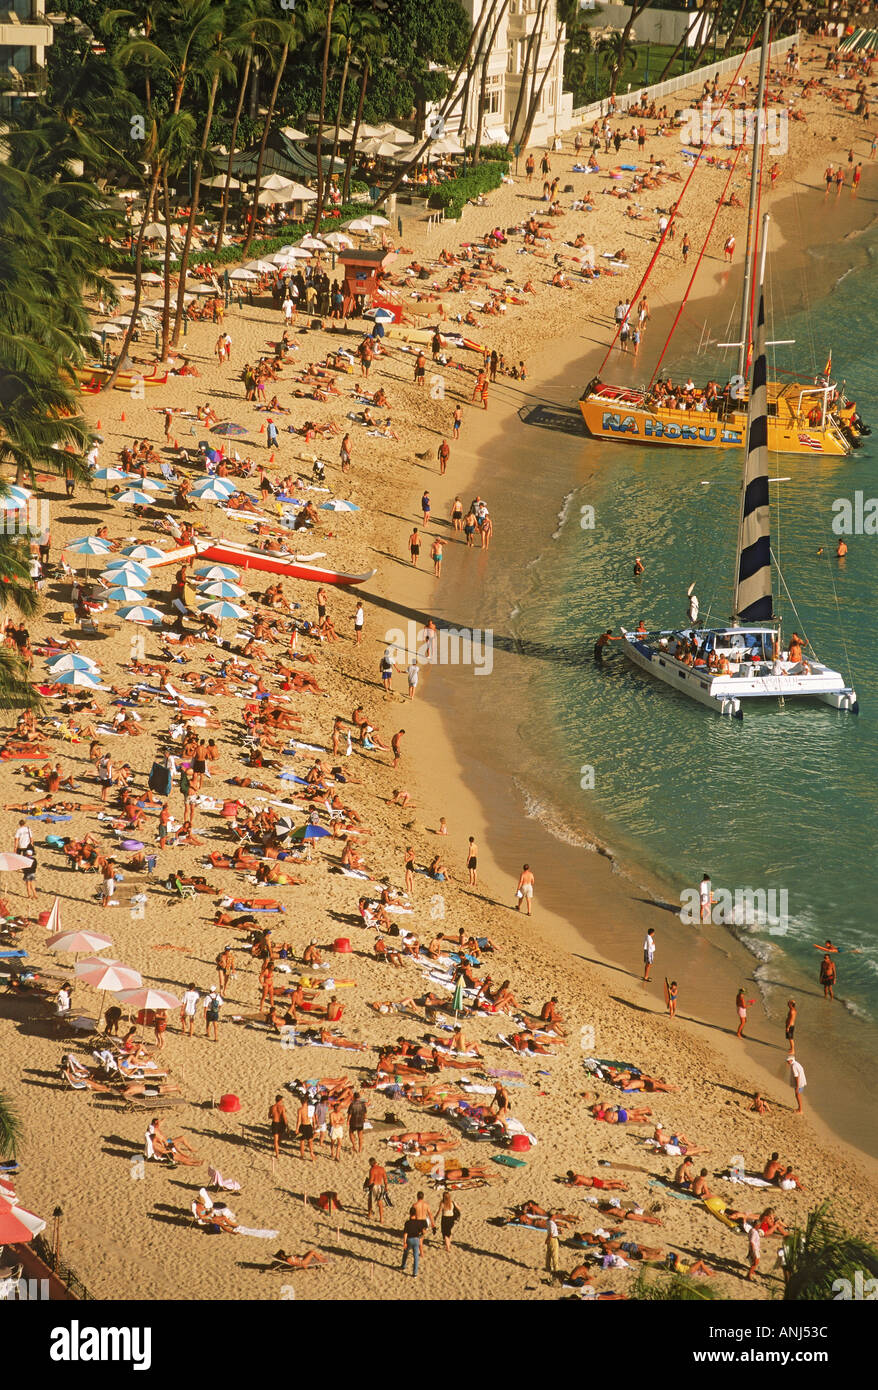 La plage de Waikiki à Honolulu avec des catamarans et des baigneurs Banque D'Images